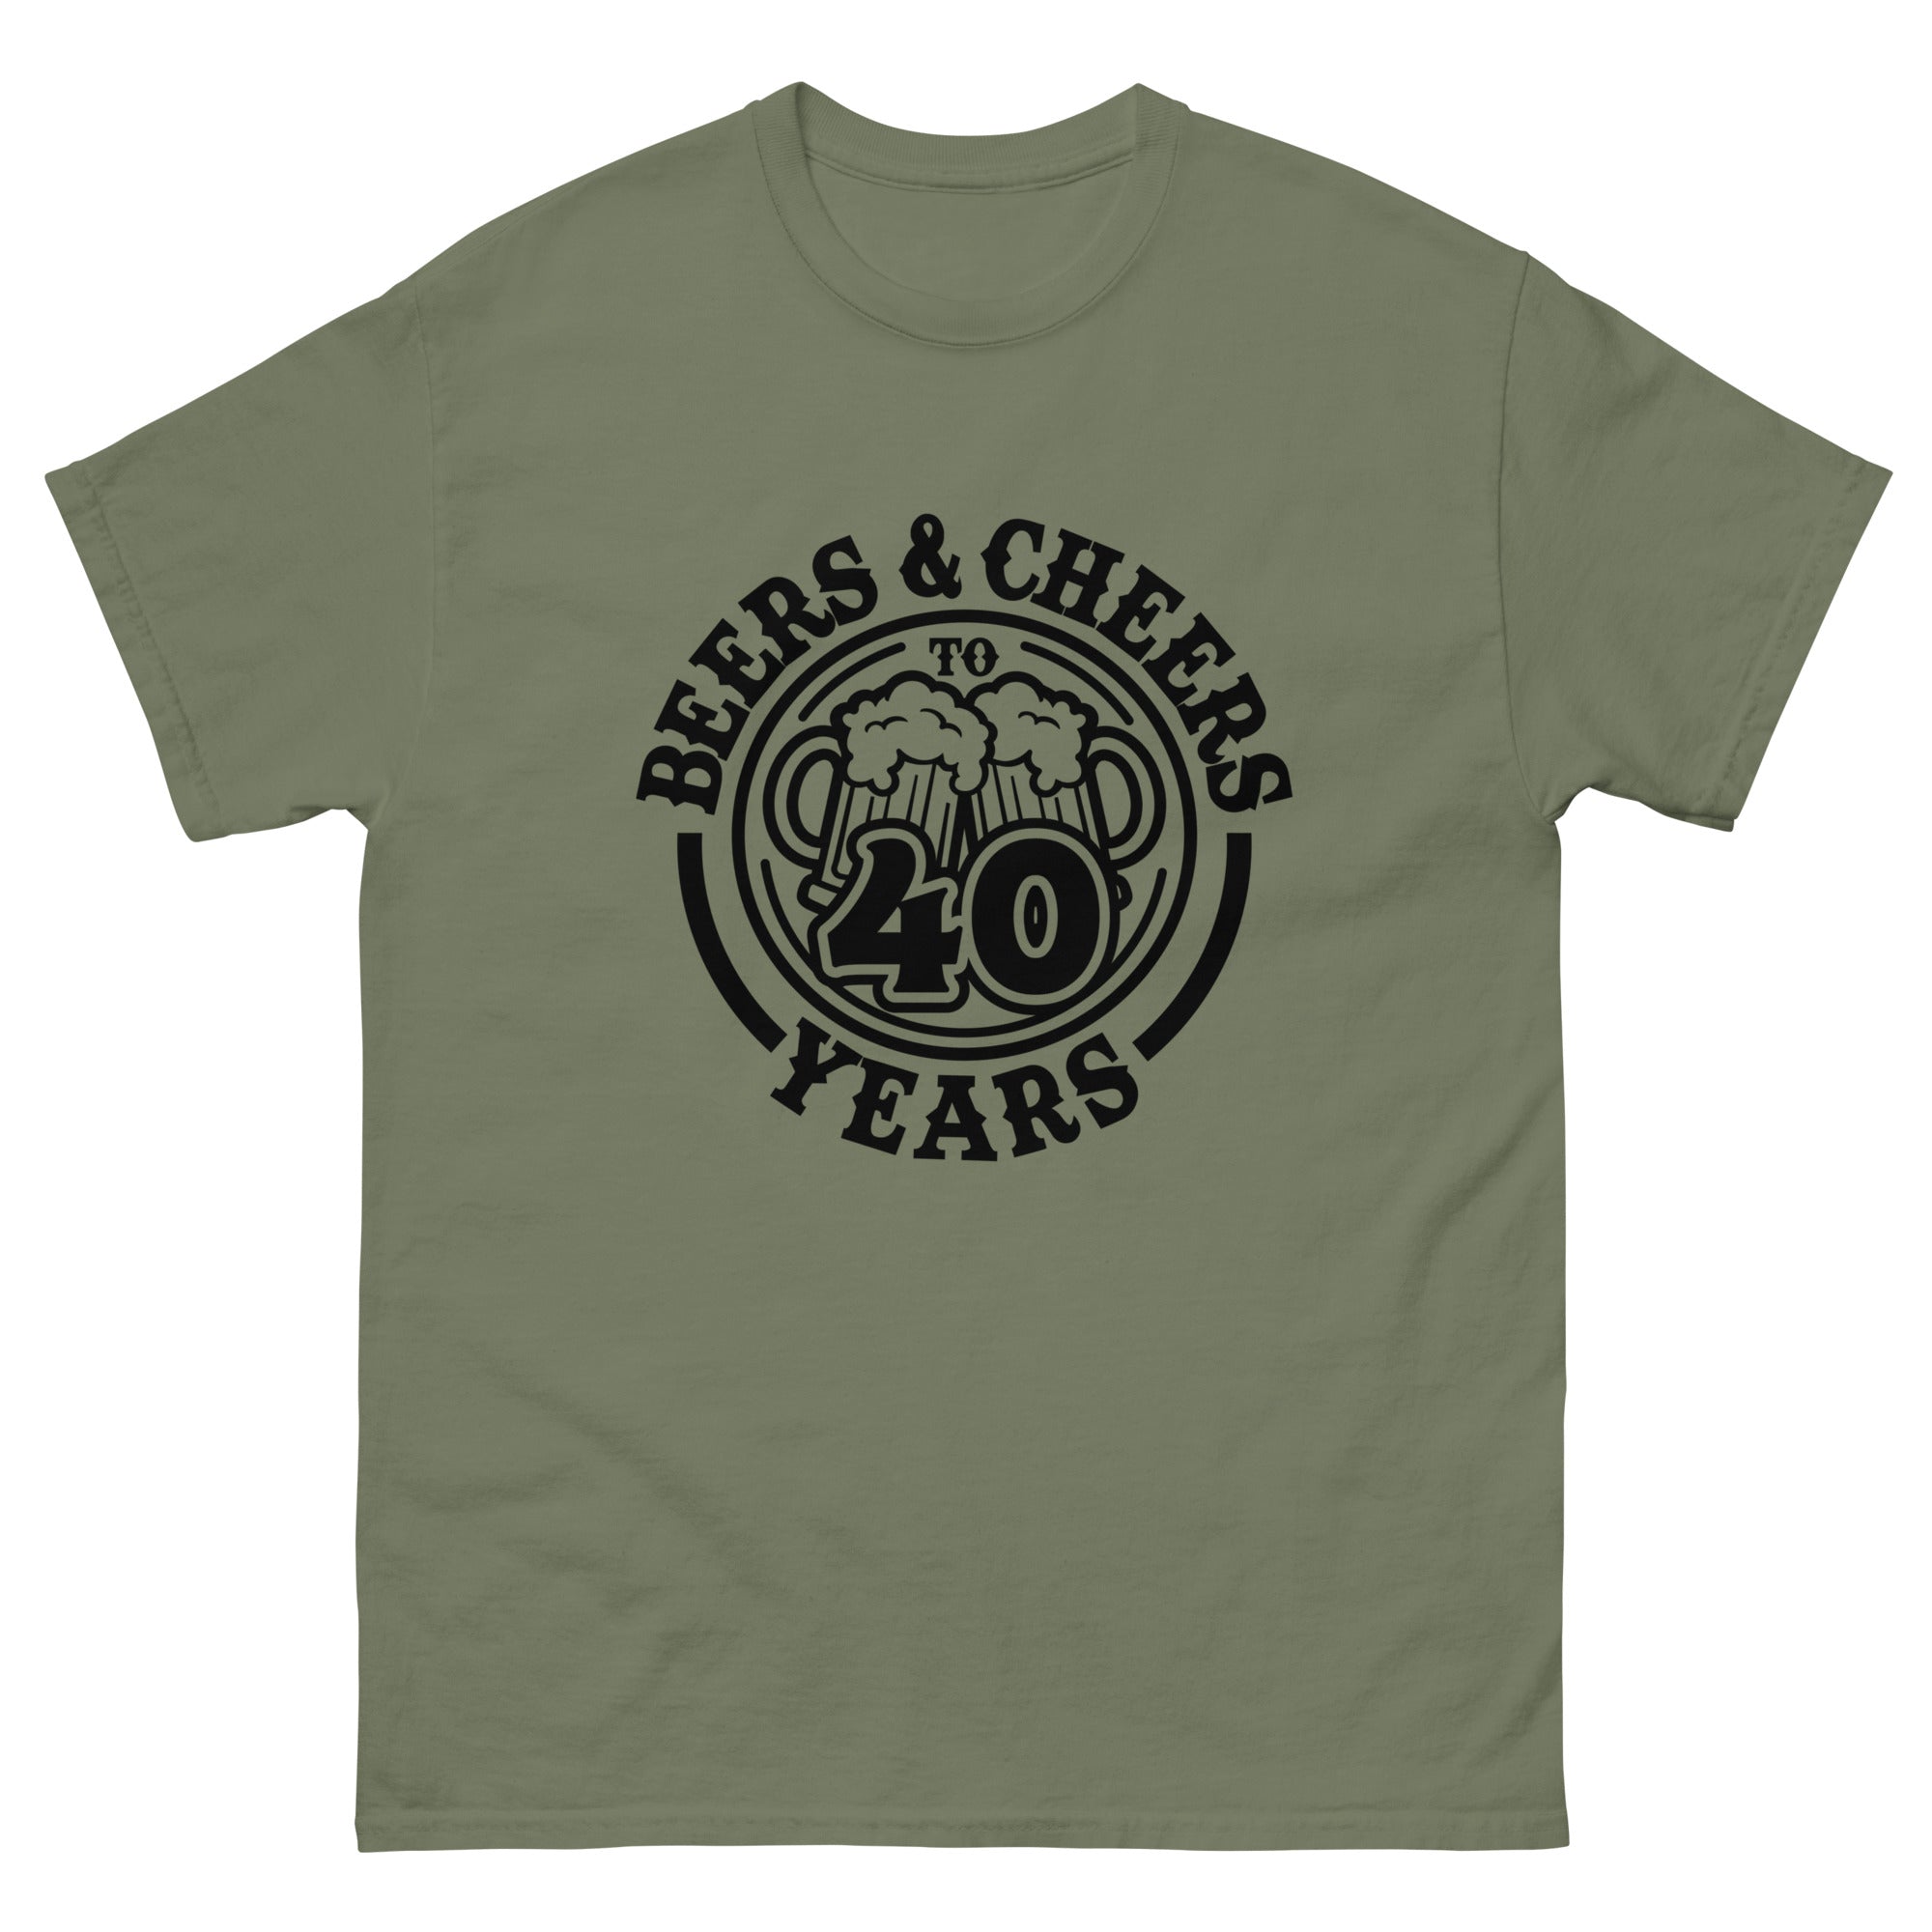 Cheers to 40 Years Shirt